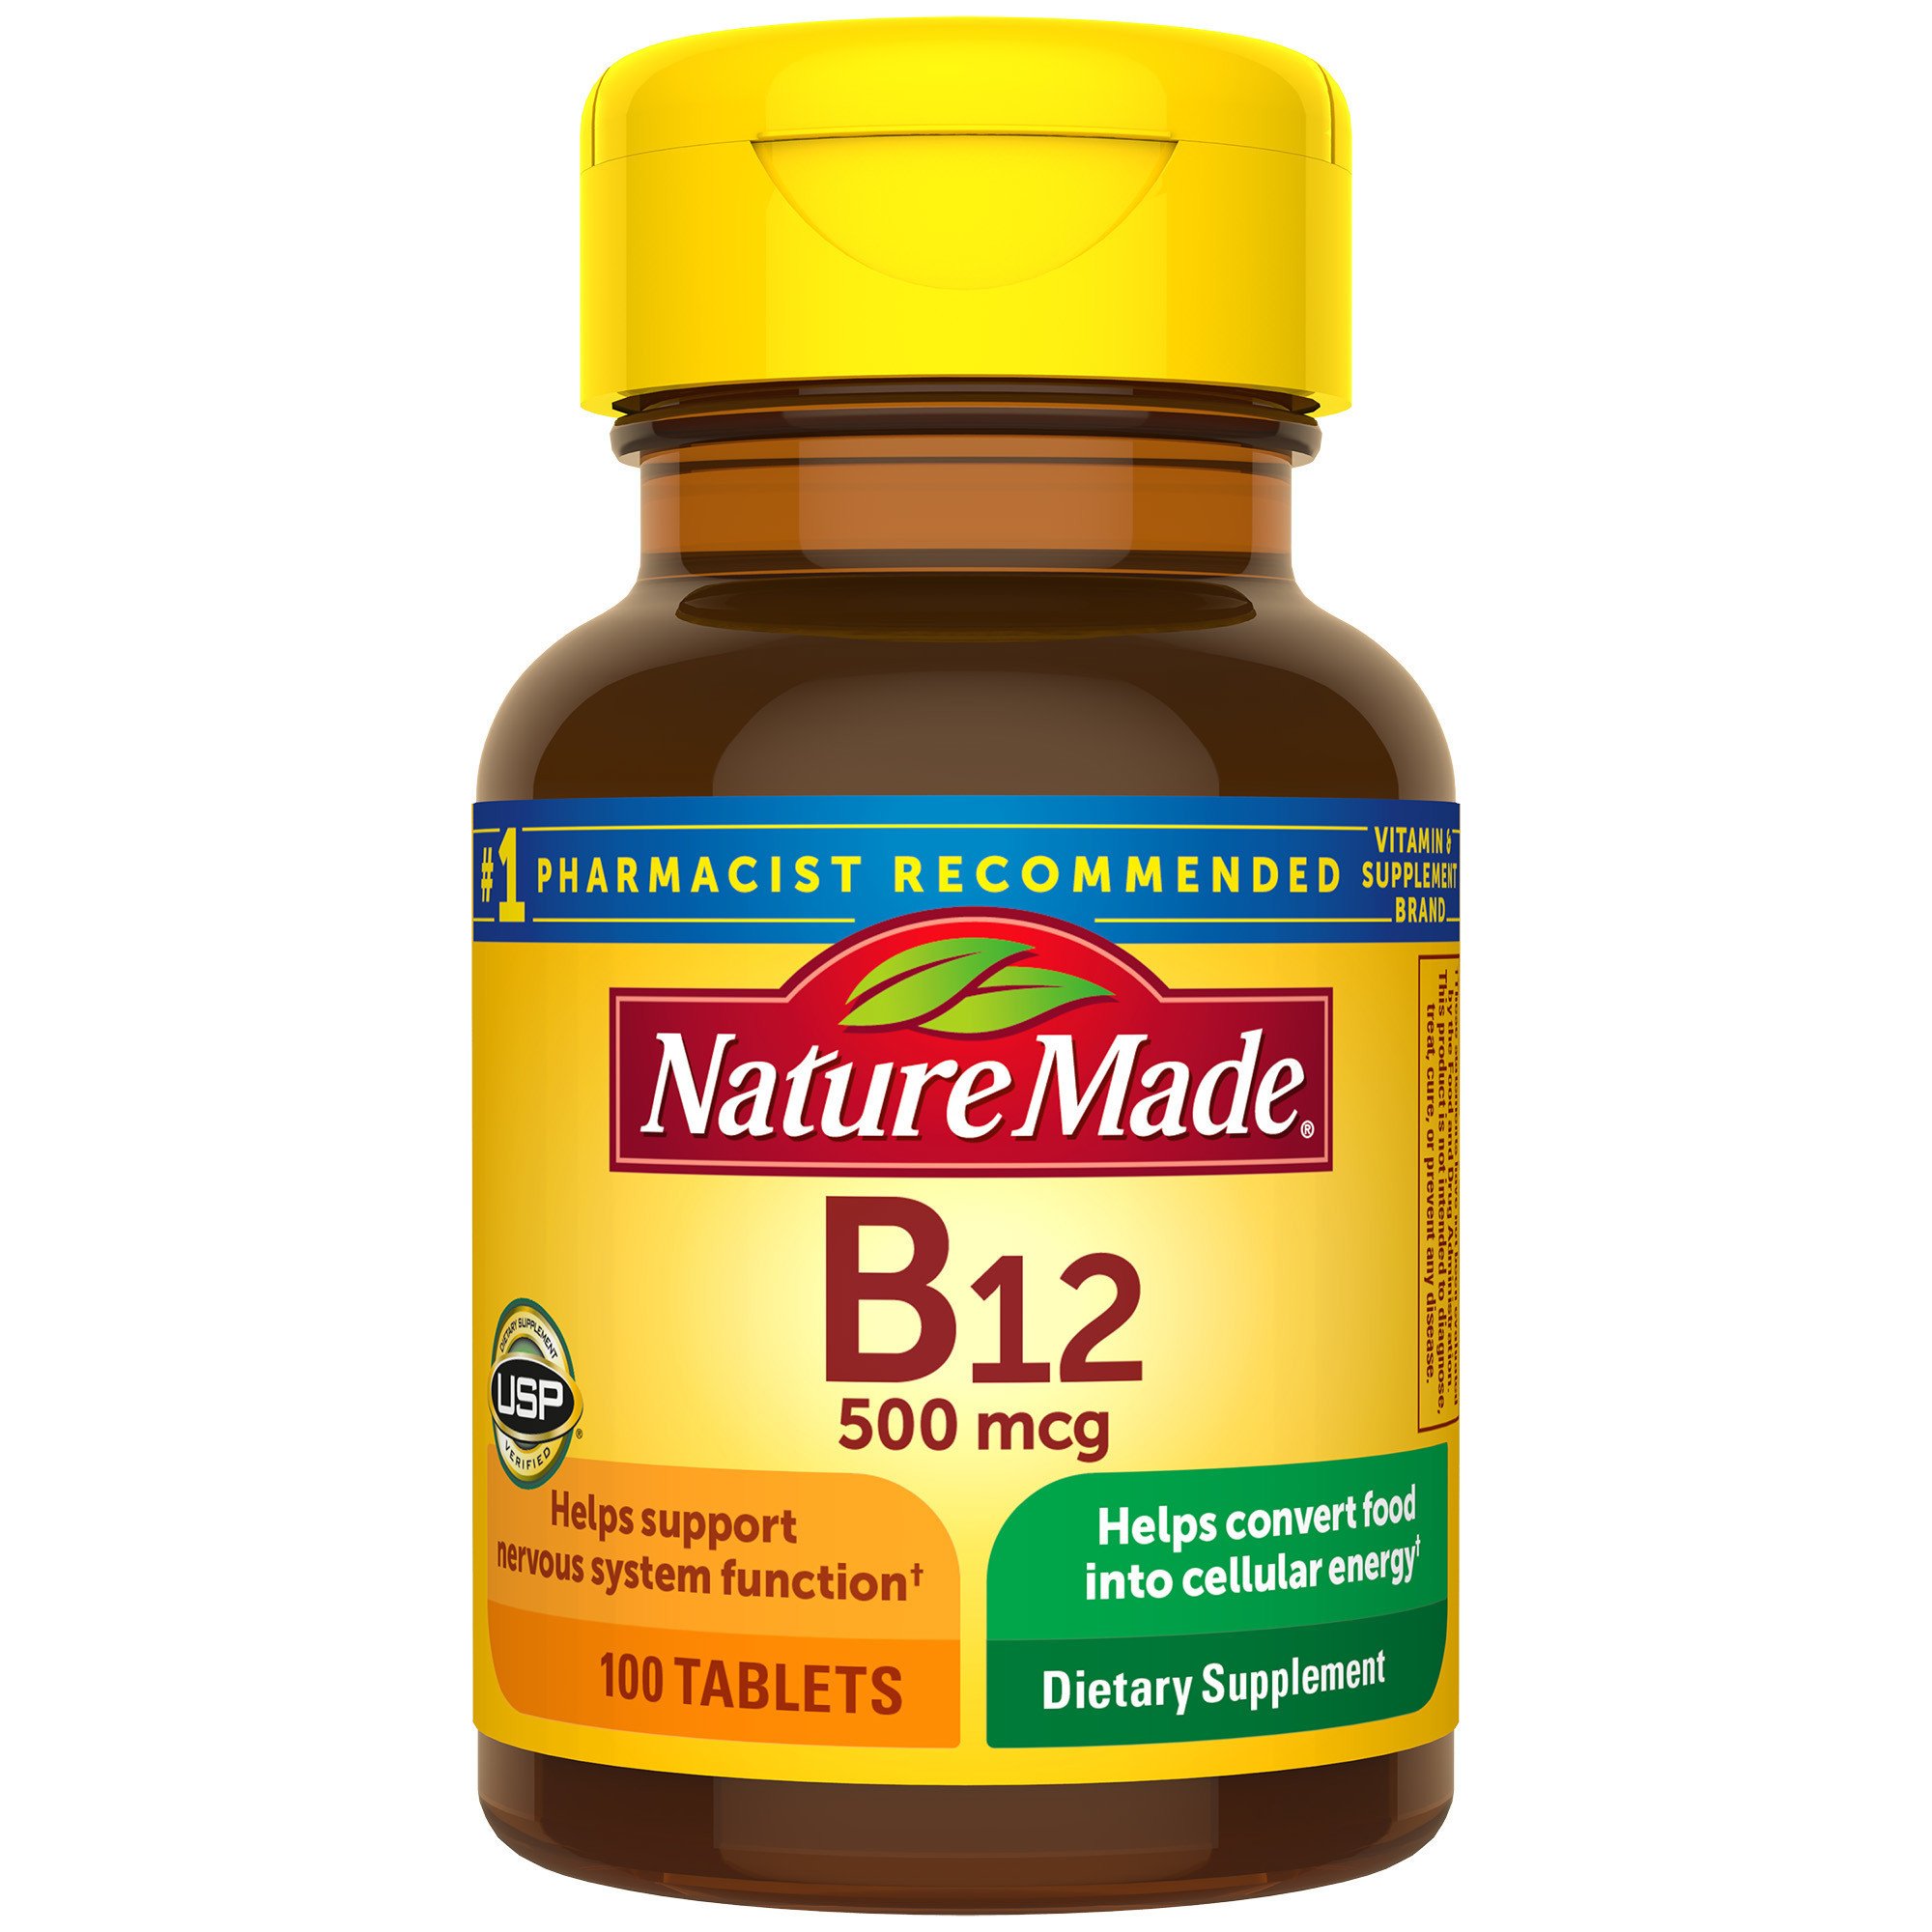 Nature Made Vitamin B-12 500 mg Tablets - Shop Vitamins Supplements at H-E-B